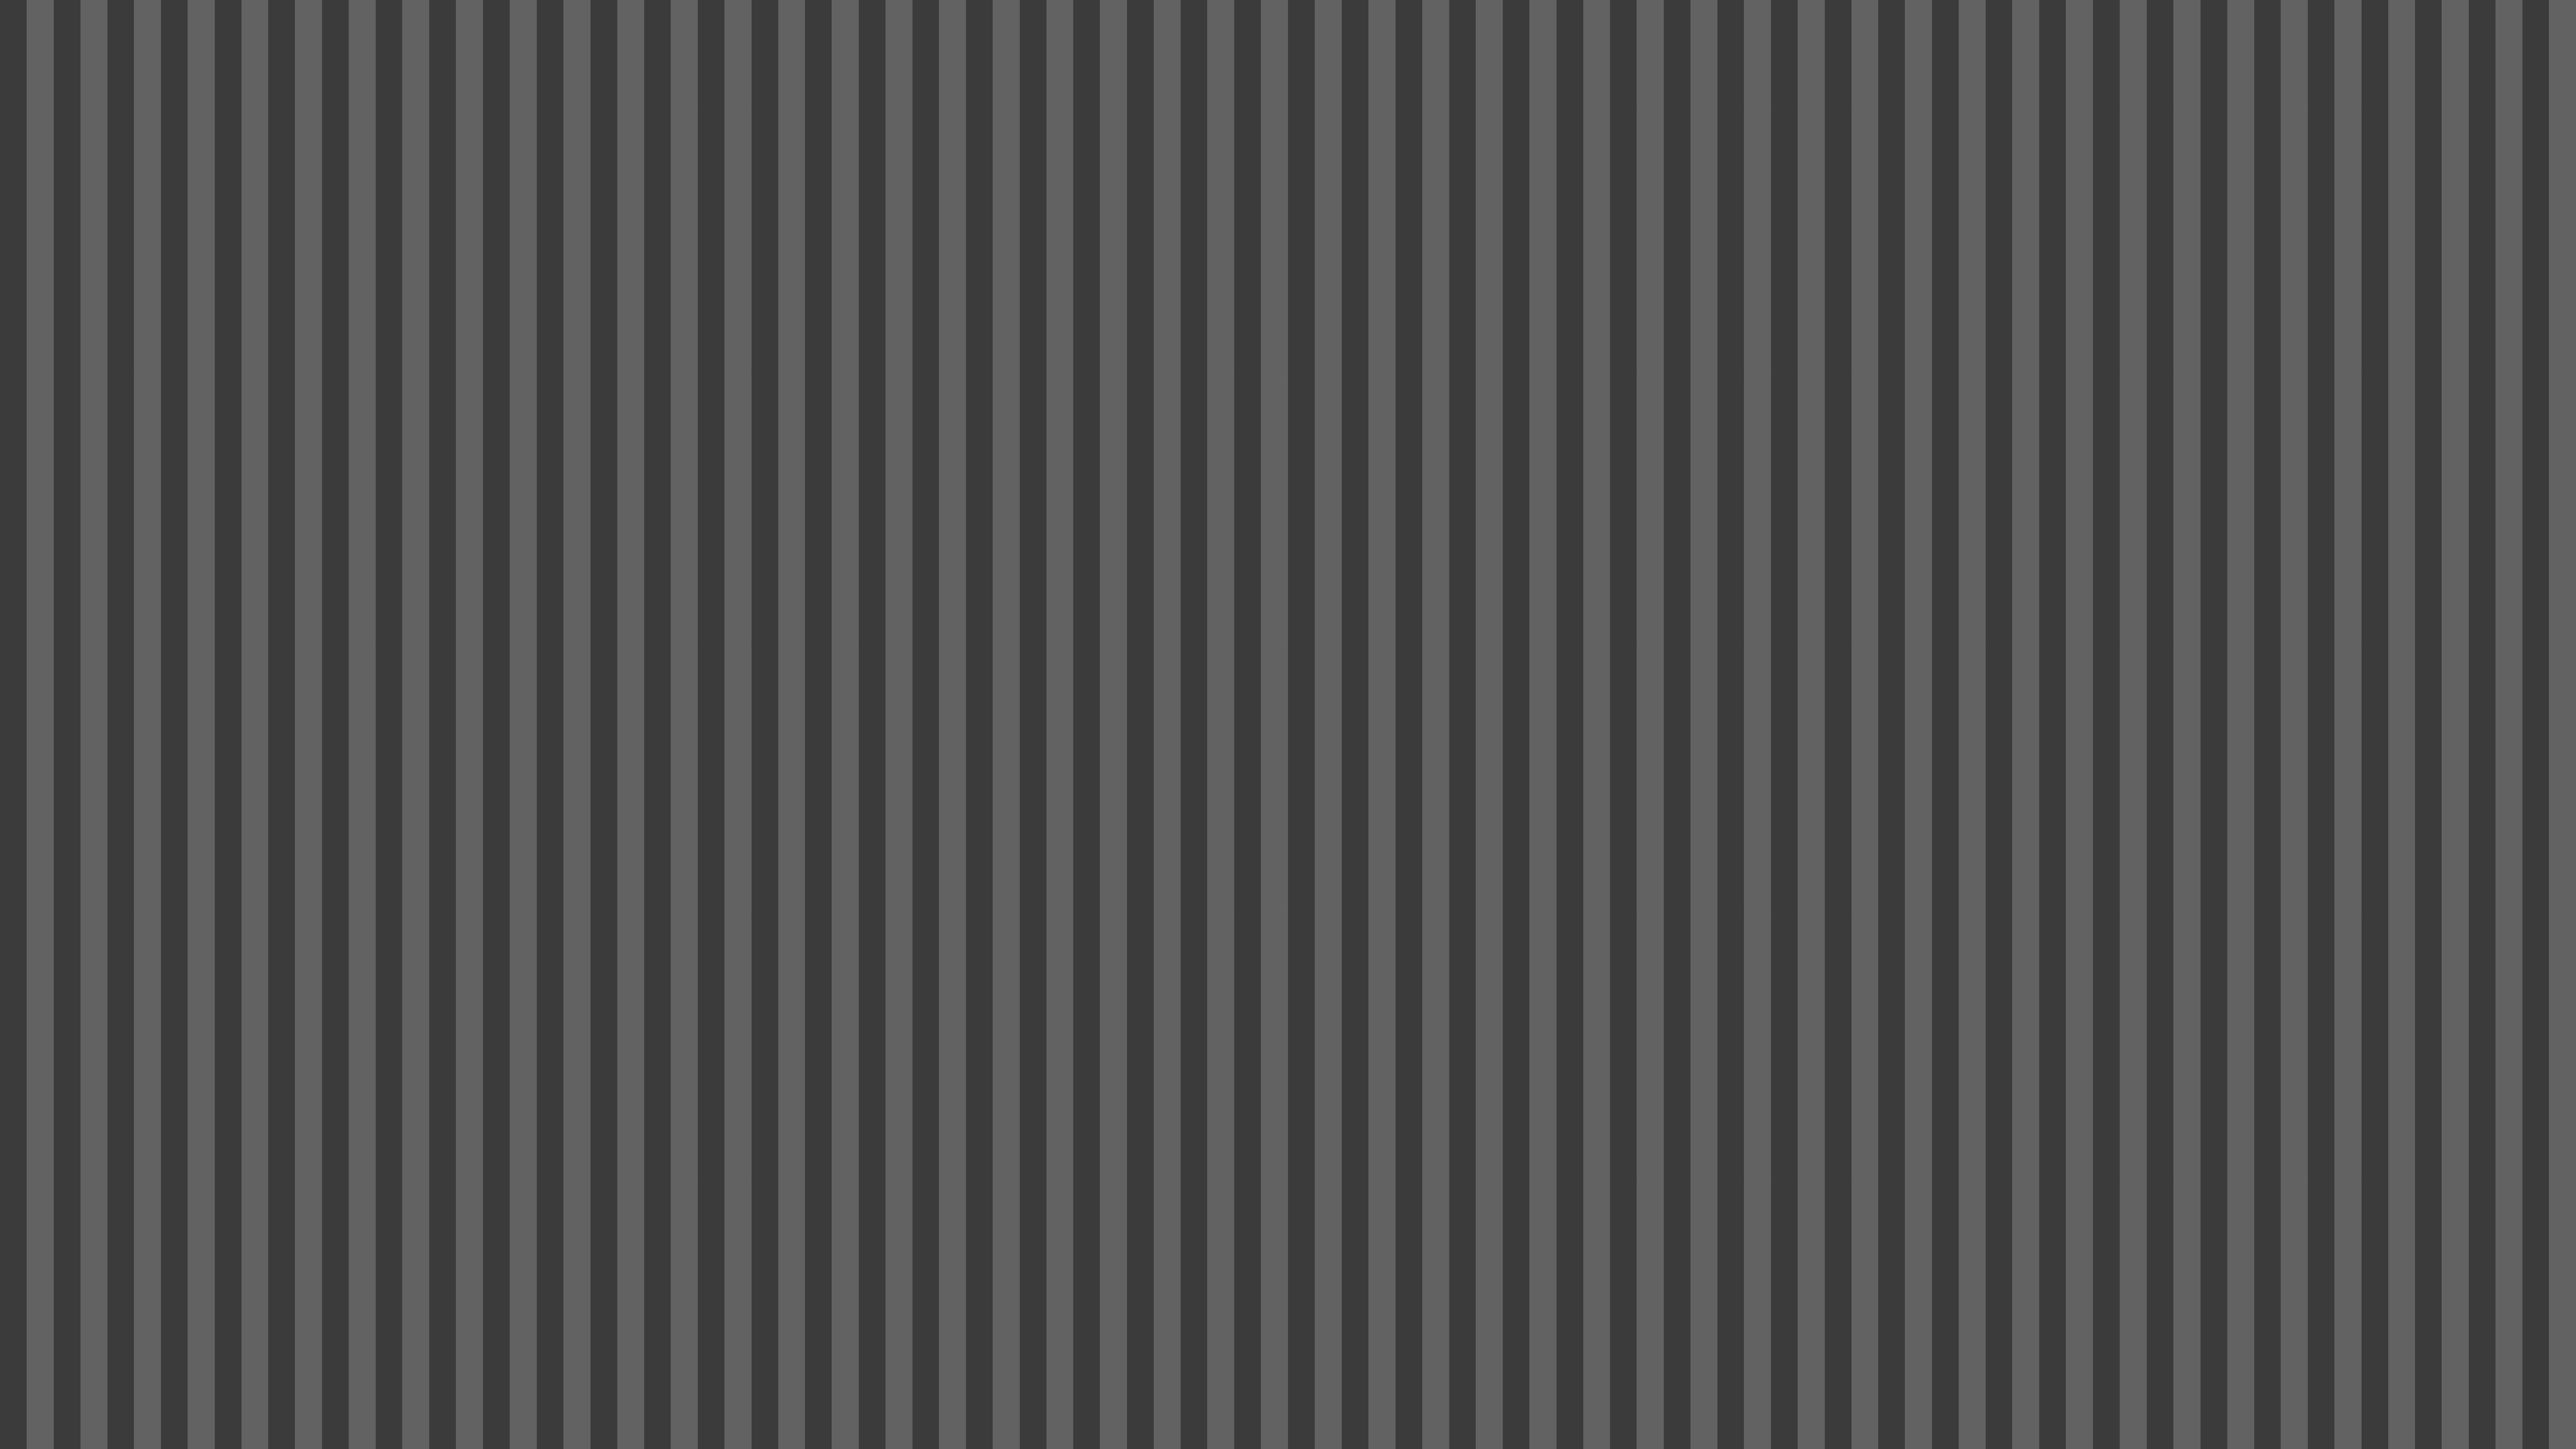 https://files.123freevectors.com/wp-content/original/104017-grey-stripes-pattern.jpg